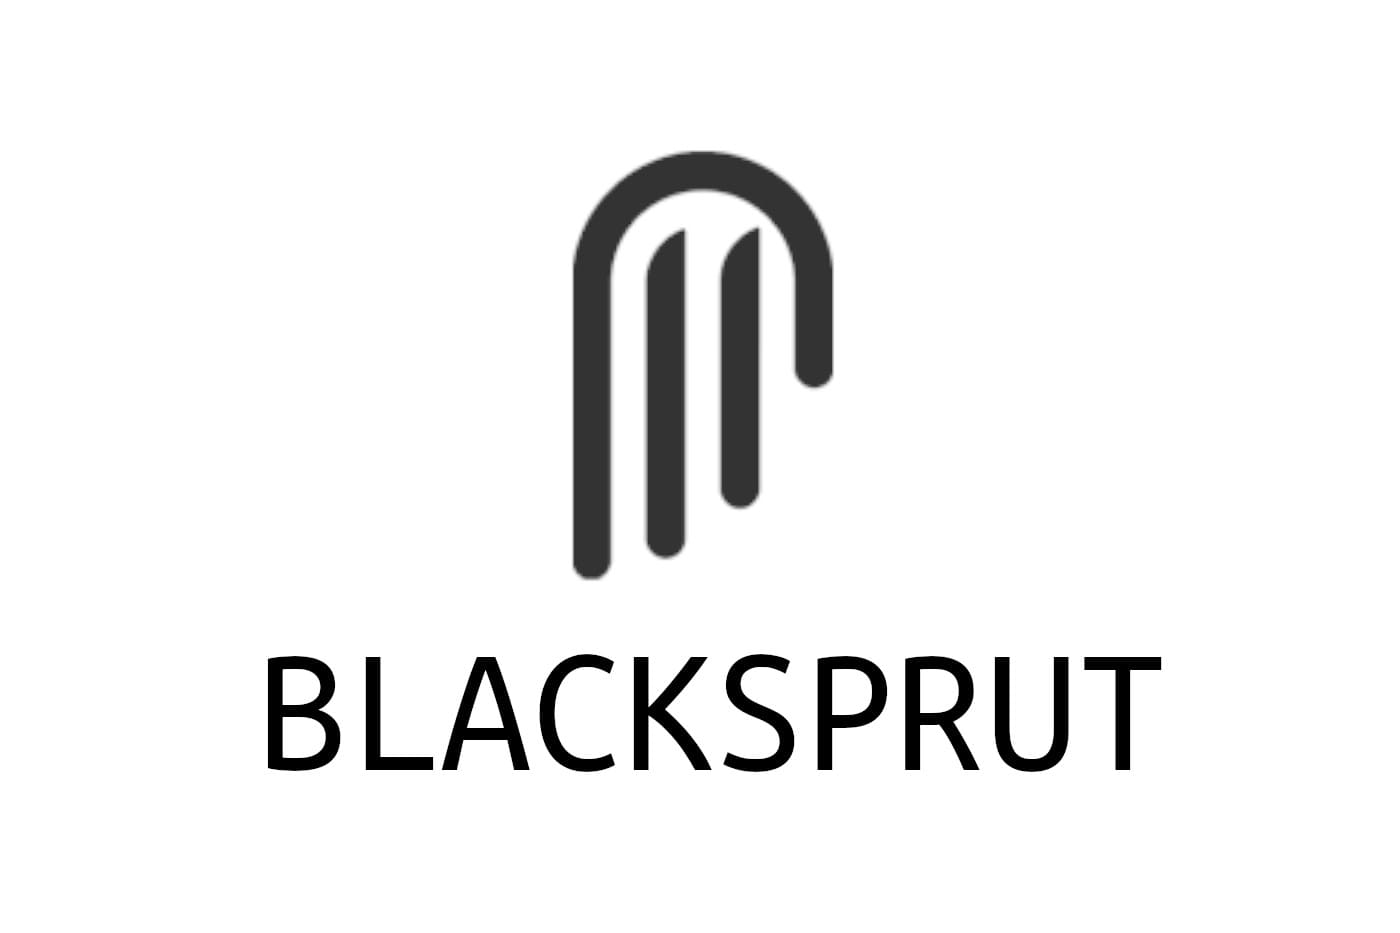 blacksprut не открывает kraken сайты попасть на мегу